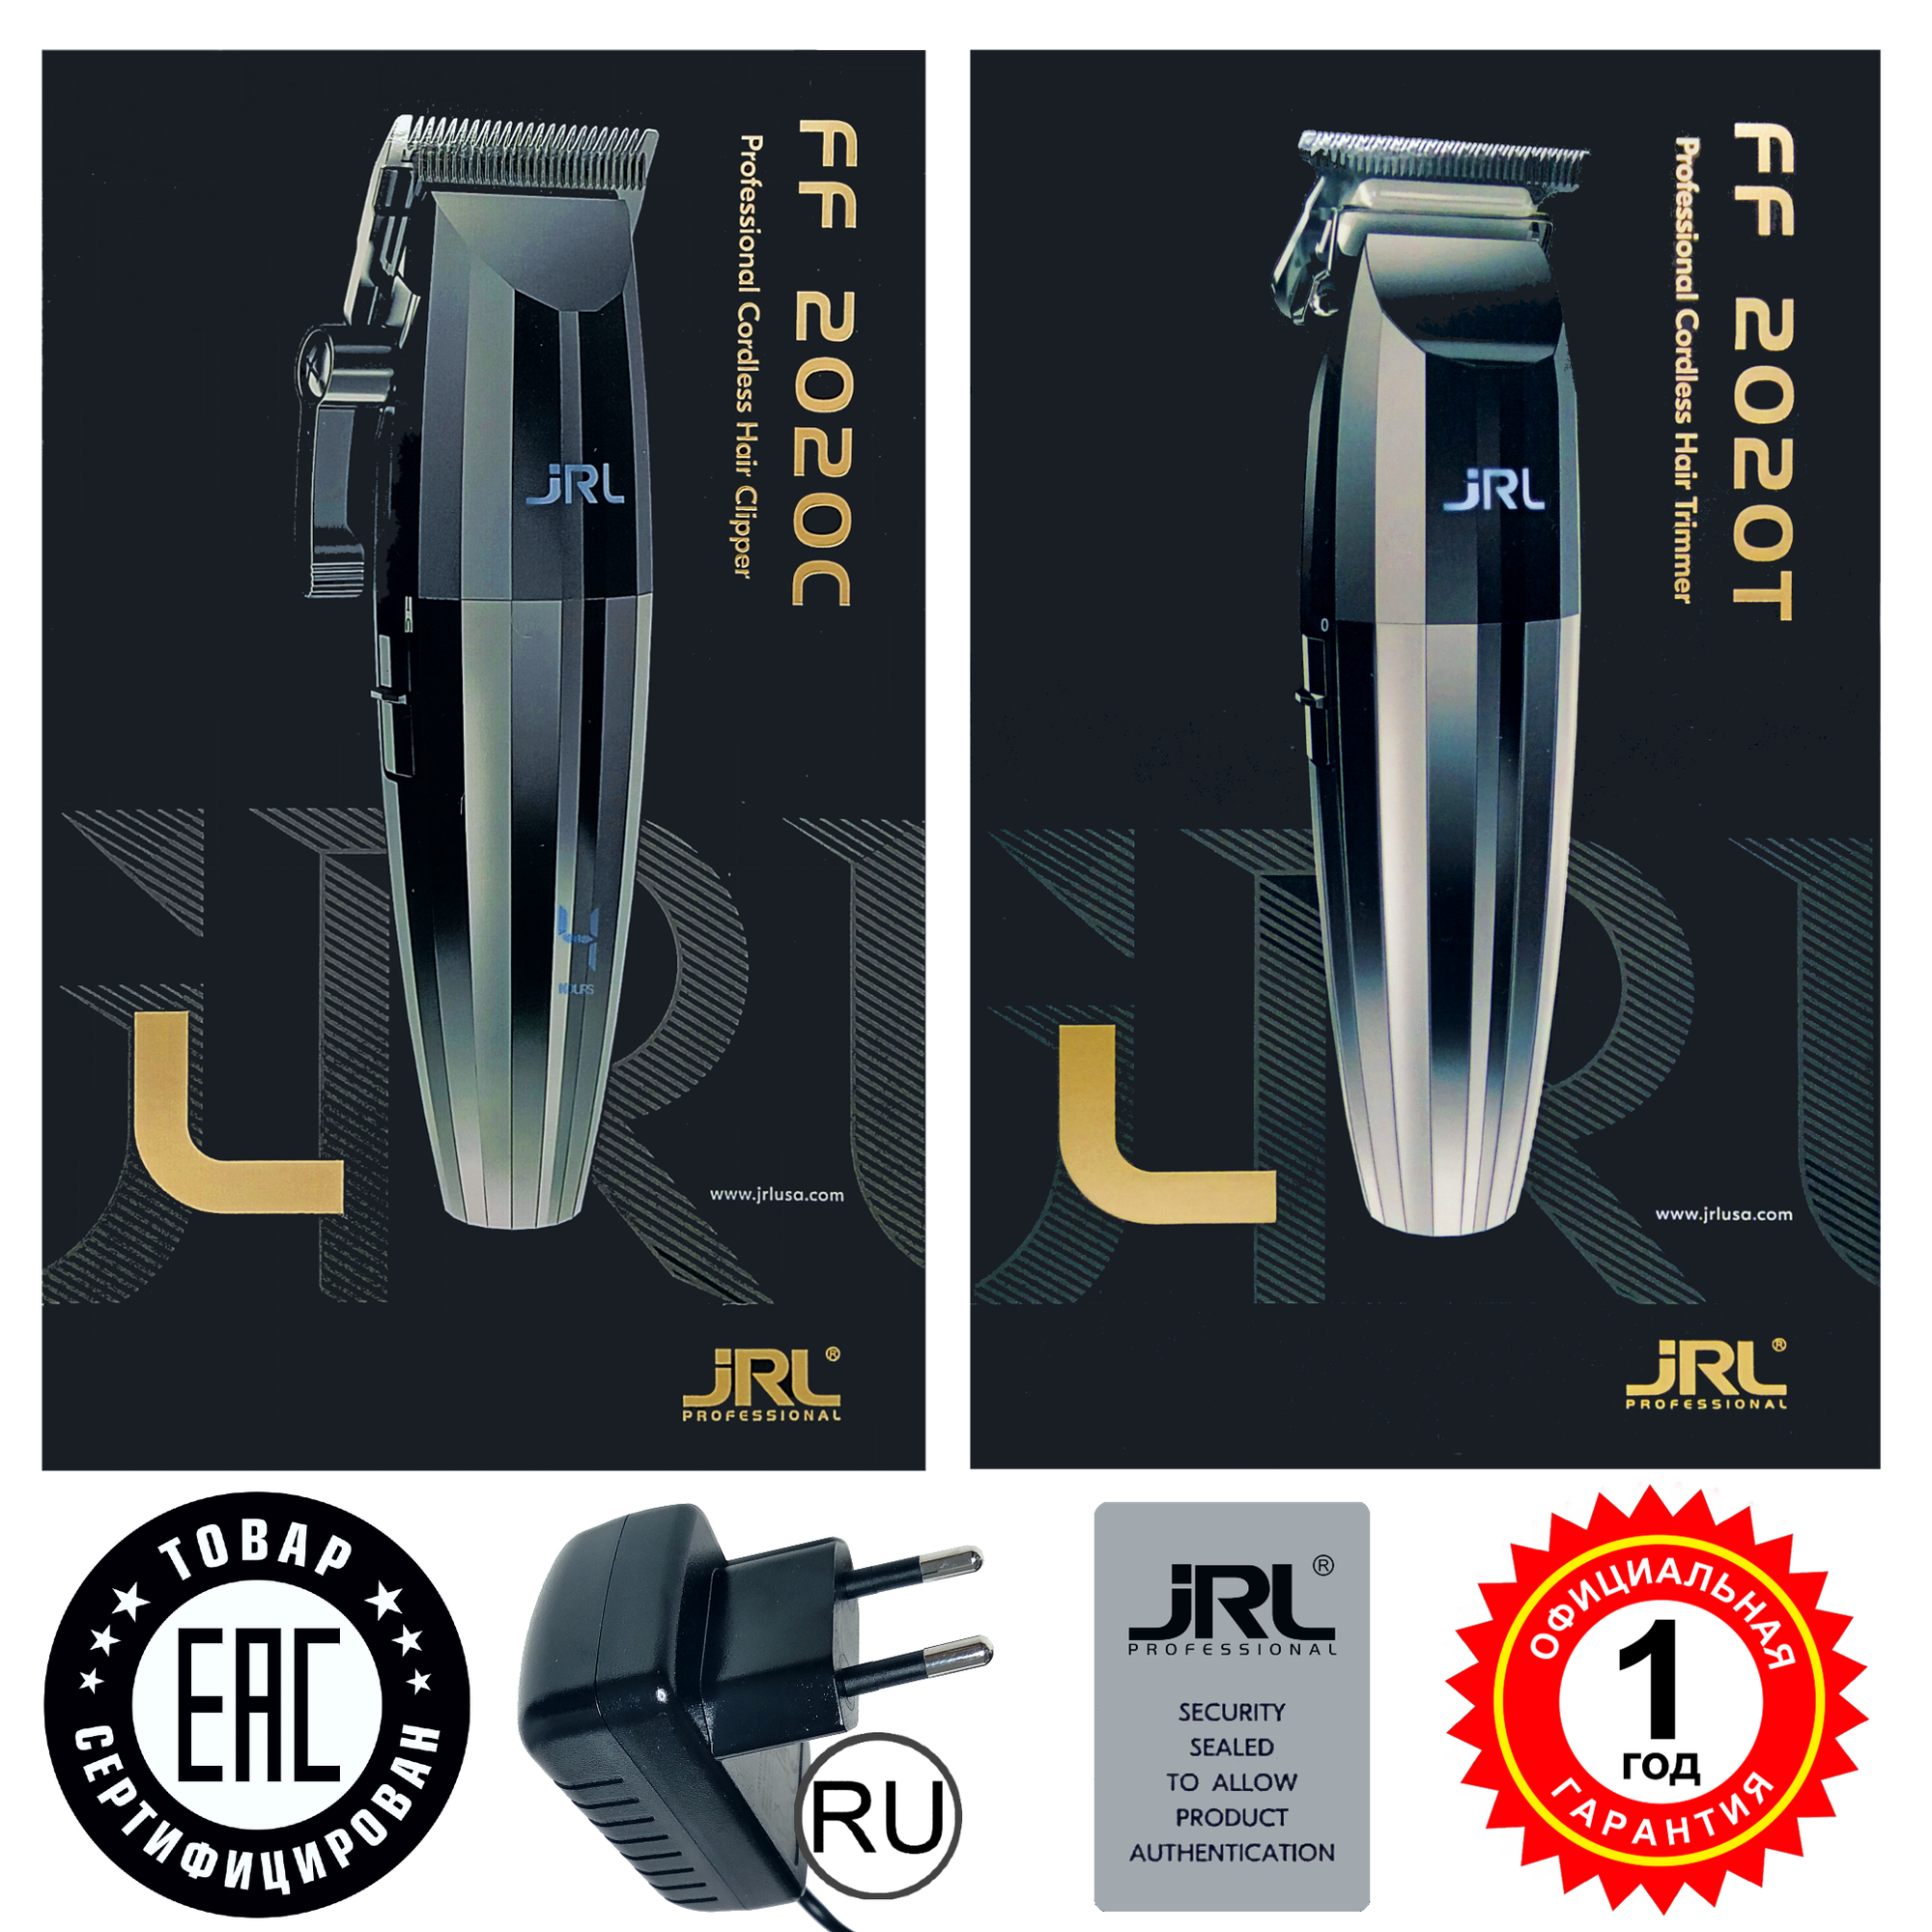 Набор JRL 2020: машинка для стрижки 2020C (версия RU)+ триммер для бороды 2020T (версия RU)